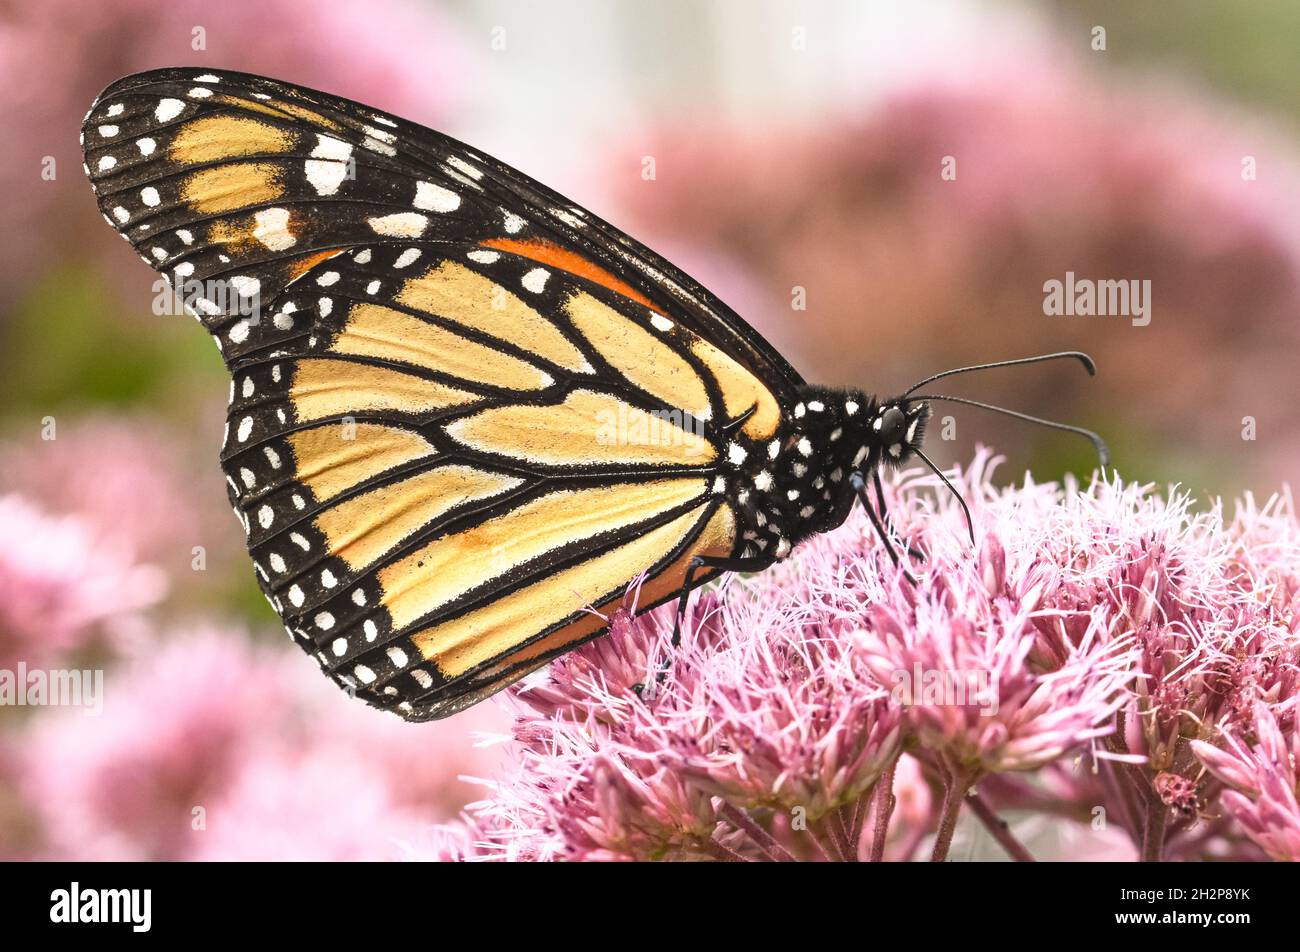 Vista lateral de una mariposa monarca (Danaus plexippus) alimentándose de flores de Joe-Pye Weed (Eupatorium purpureum) con fondo borroso.Espacio de copia. Foto de stock